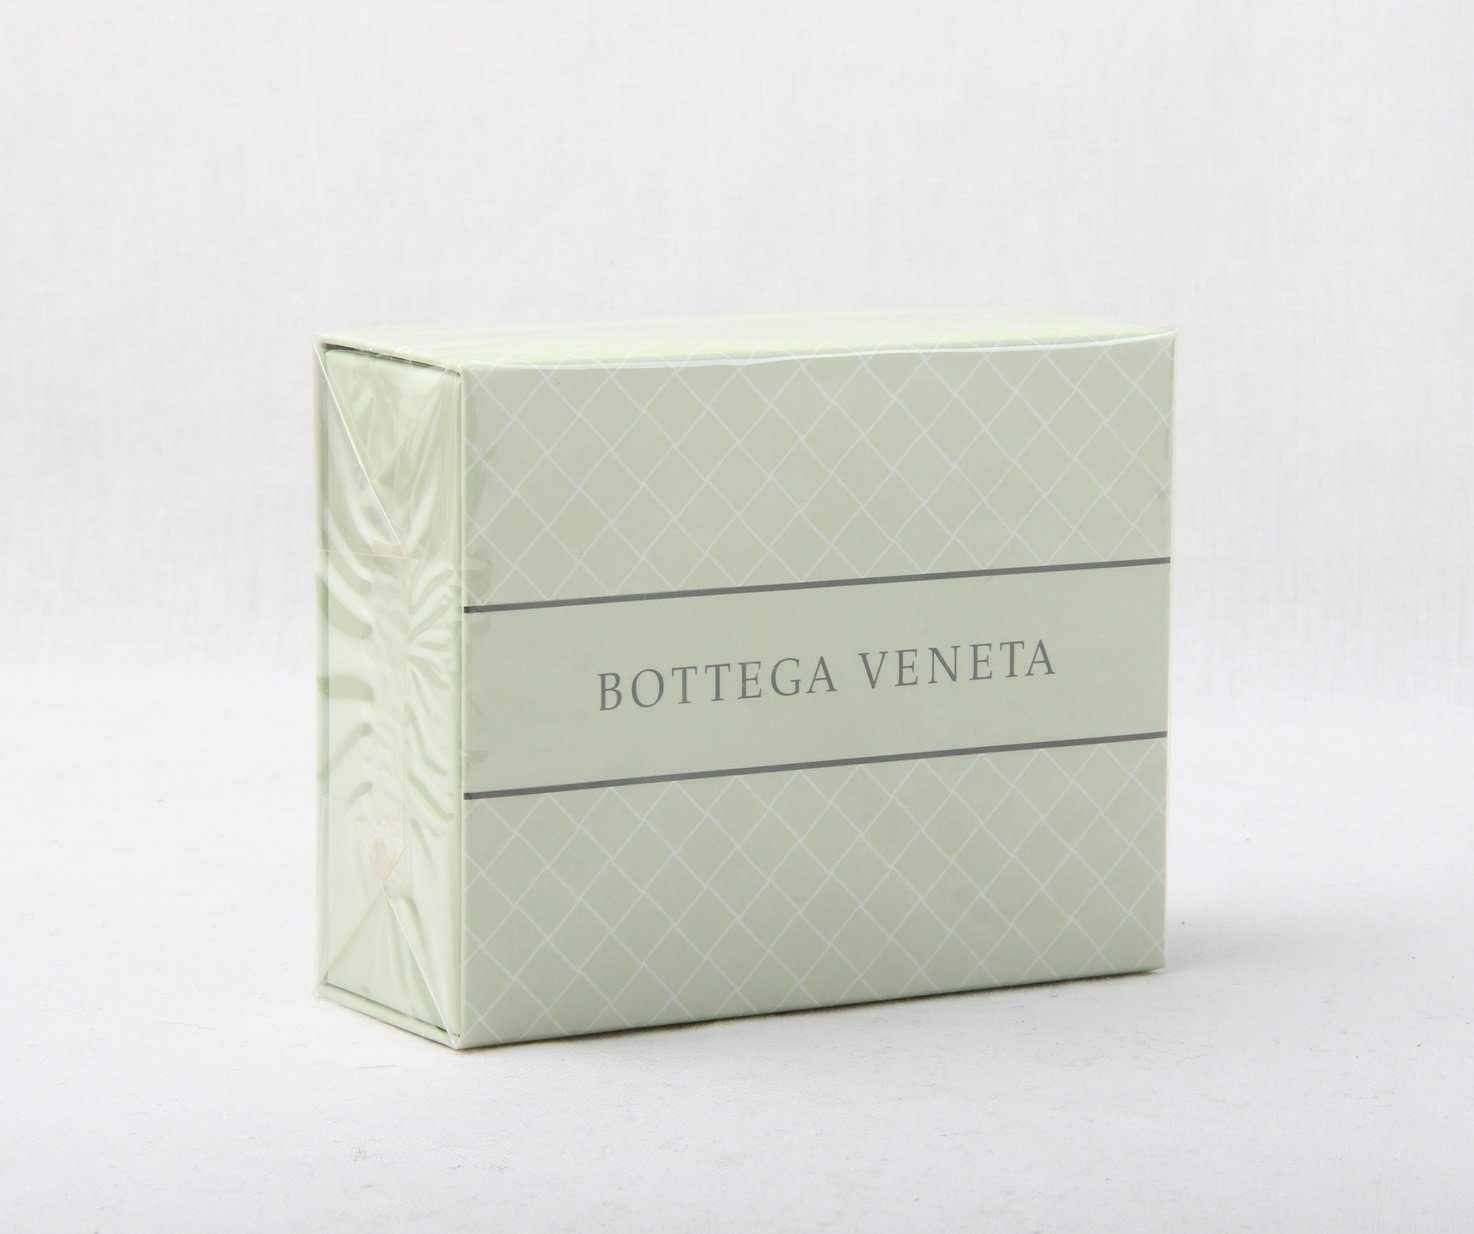 Handseife Bottega 150g Perfumed Soap VENETA Aromatique Veneta Essence Seife BOTTEGA